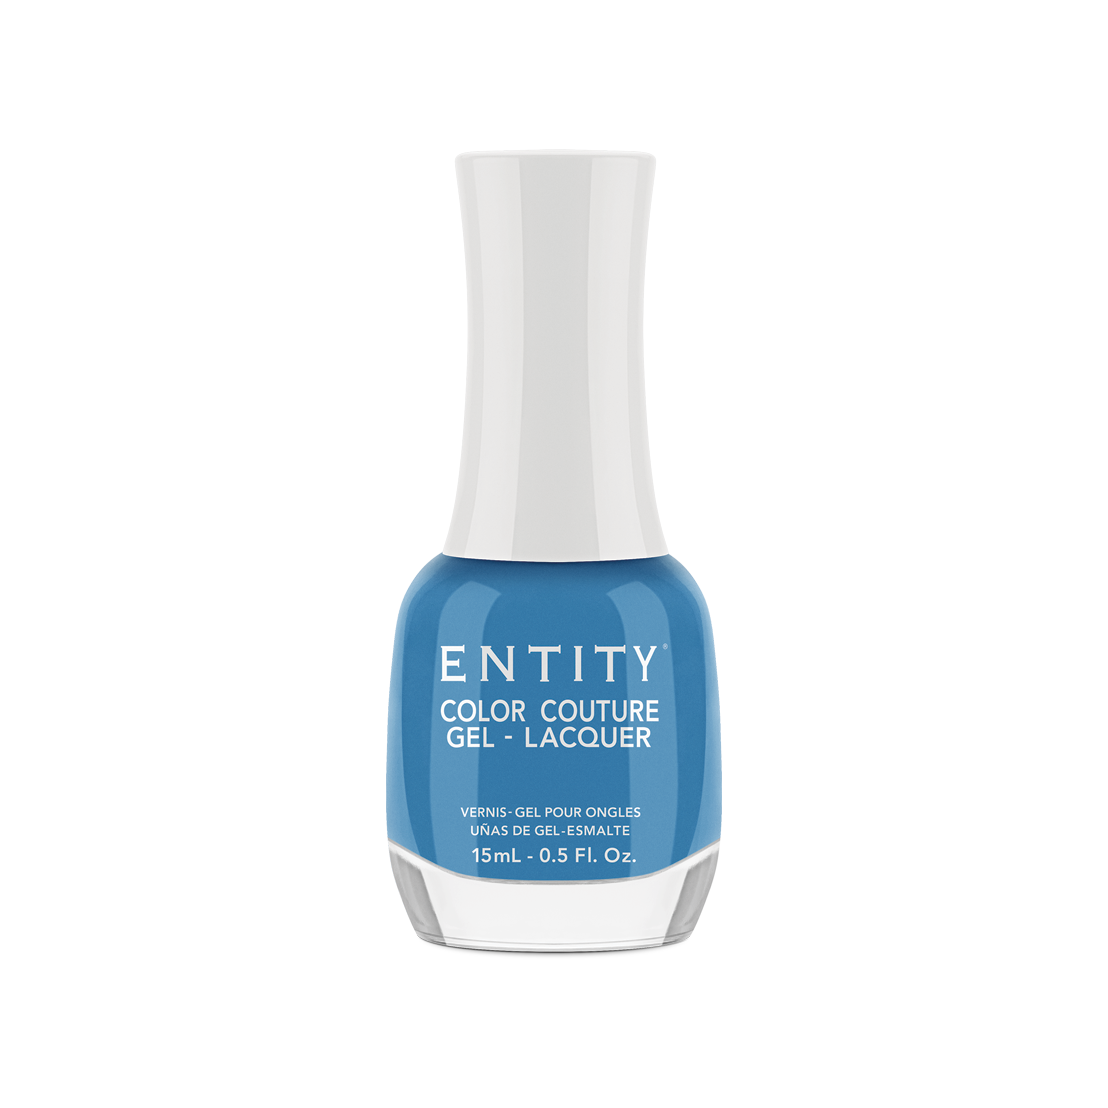 Entity Gel Lacquer - Flaunt Your Fashion 15 mL/0.5 Fl. Oz